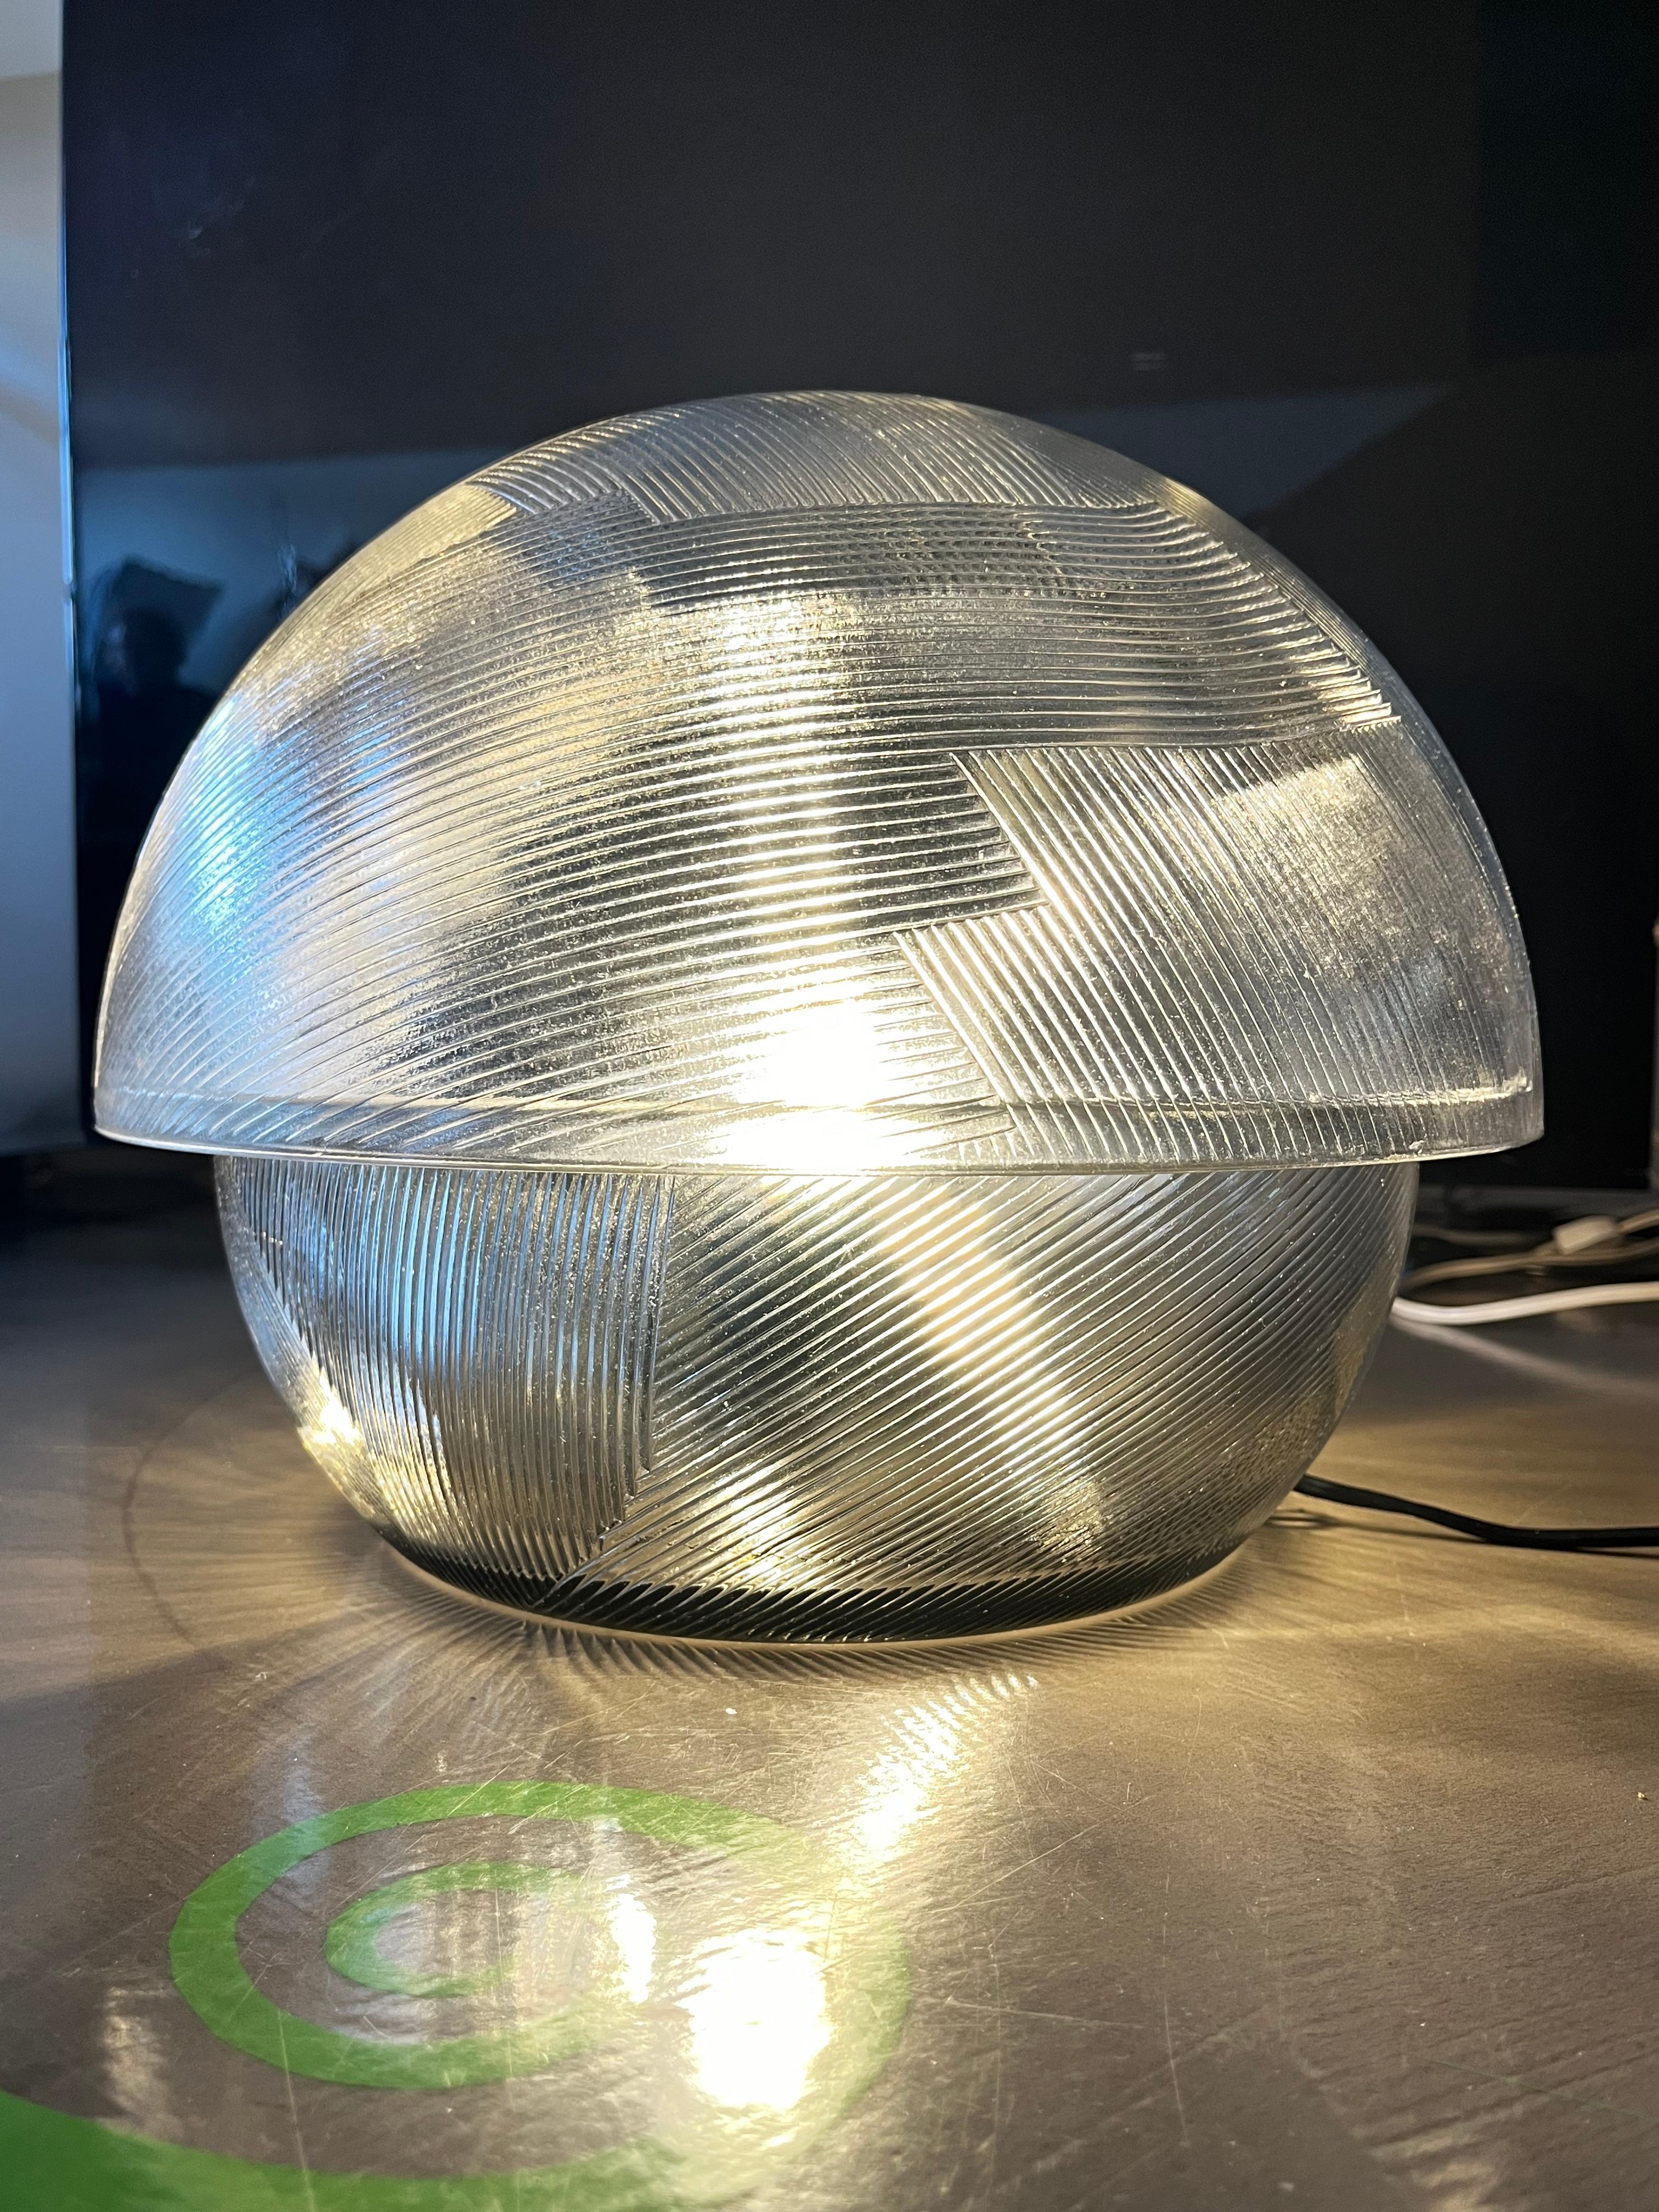 Lampe de table en cristal travaillé, modèle Kyoto,  conçu par Sergio Asti pour Arnolfo di Cambio. La lampe est datée de 1970 environ.

Le cristal travaillé rend l'effet de cette lampe magique. La lampe a un poids important. 